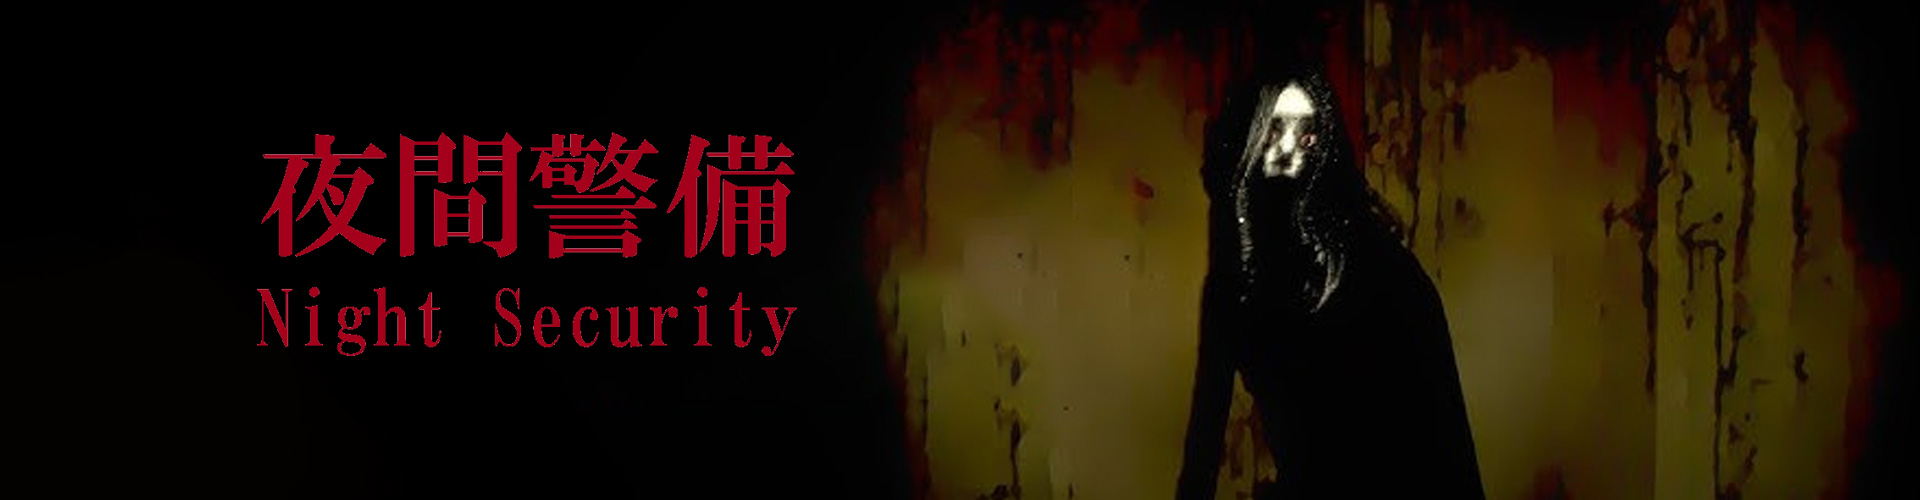 Night Security Ã© un gioco horror psicologico giapponese